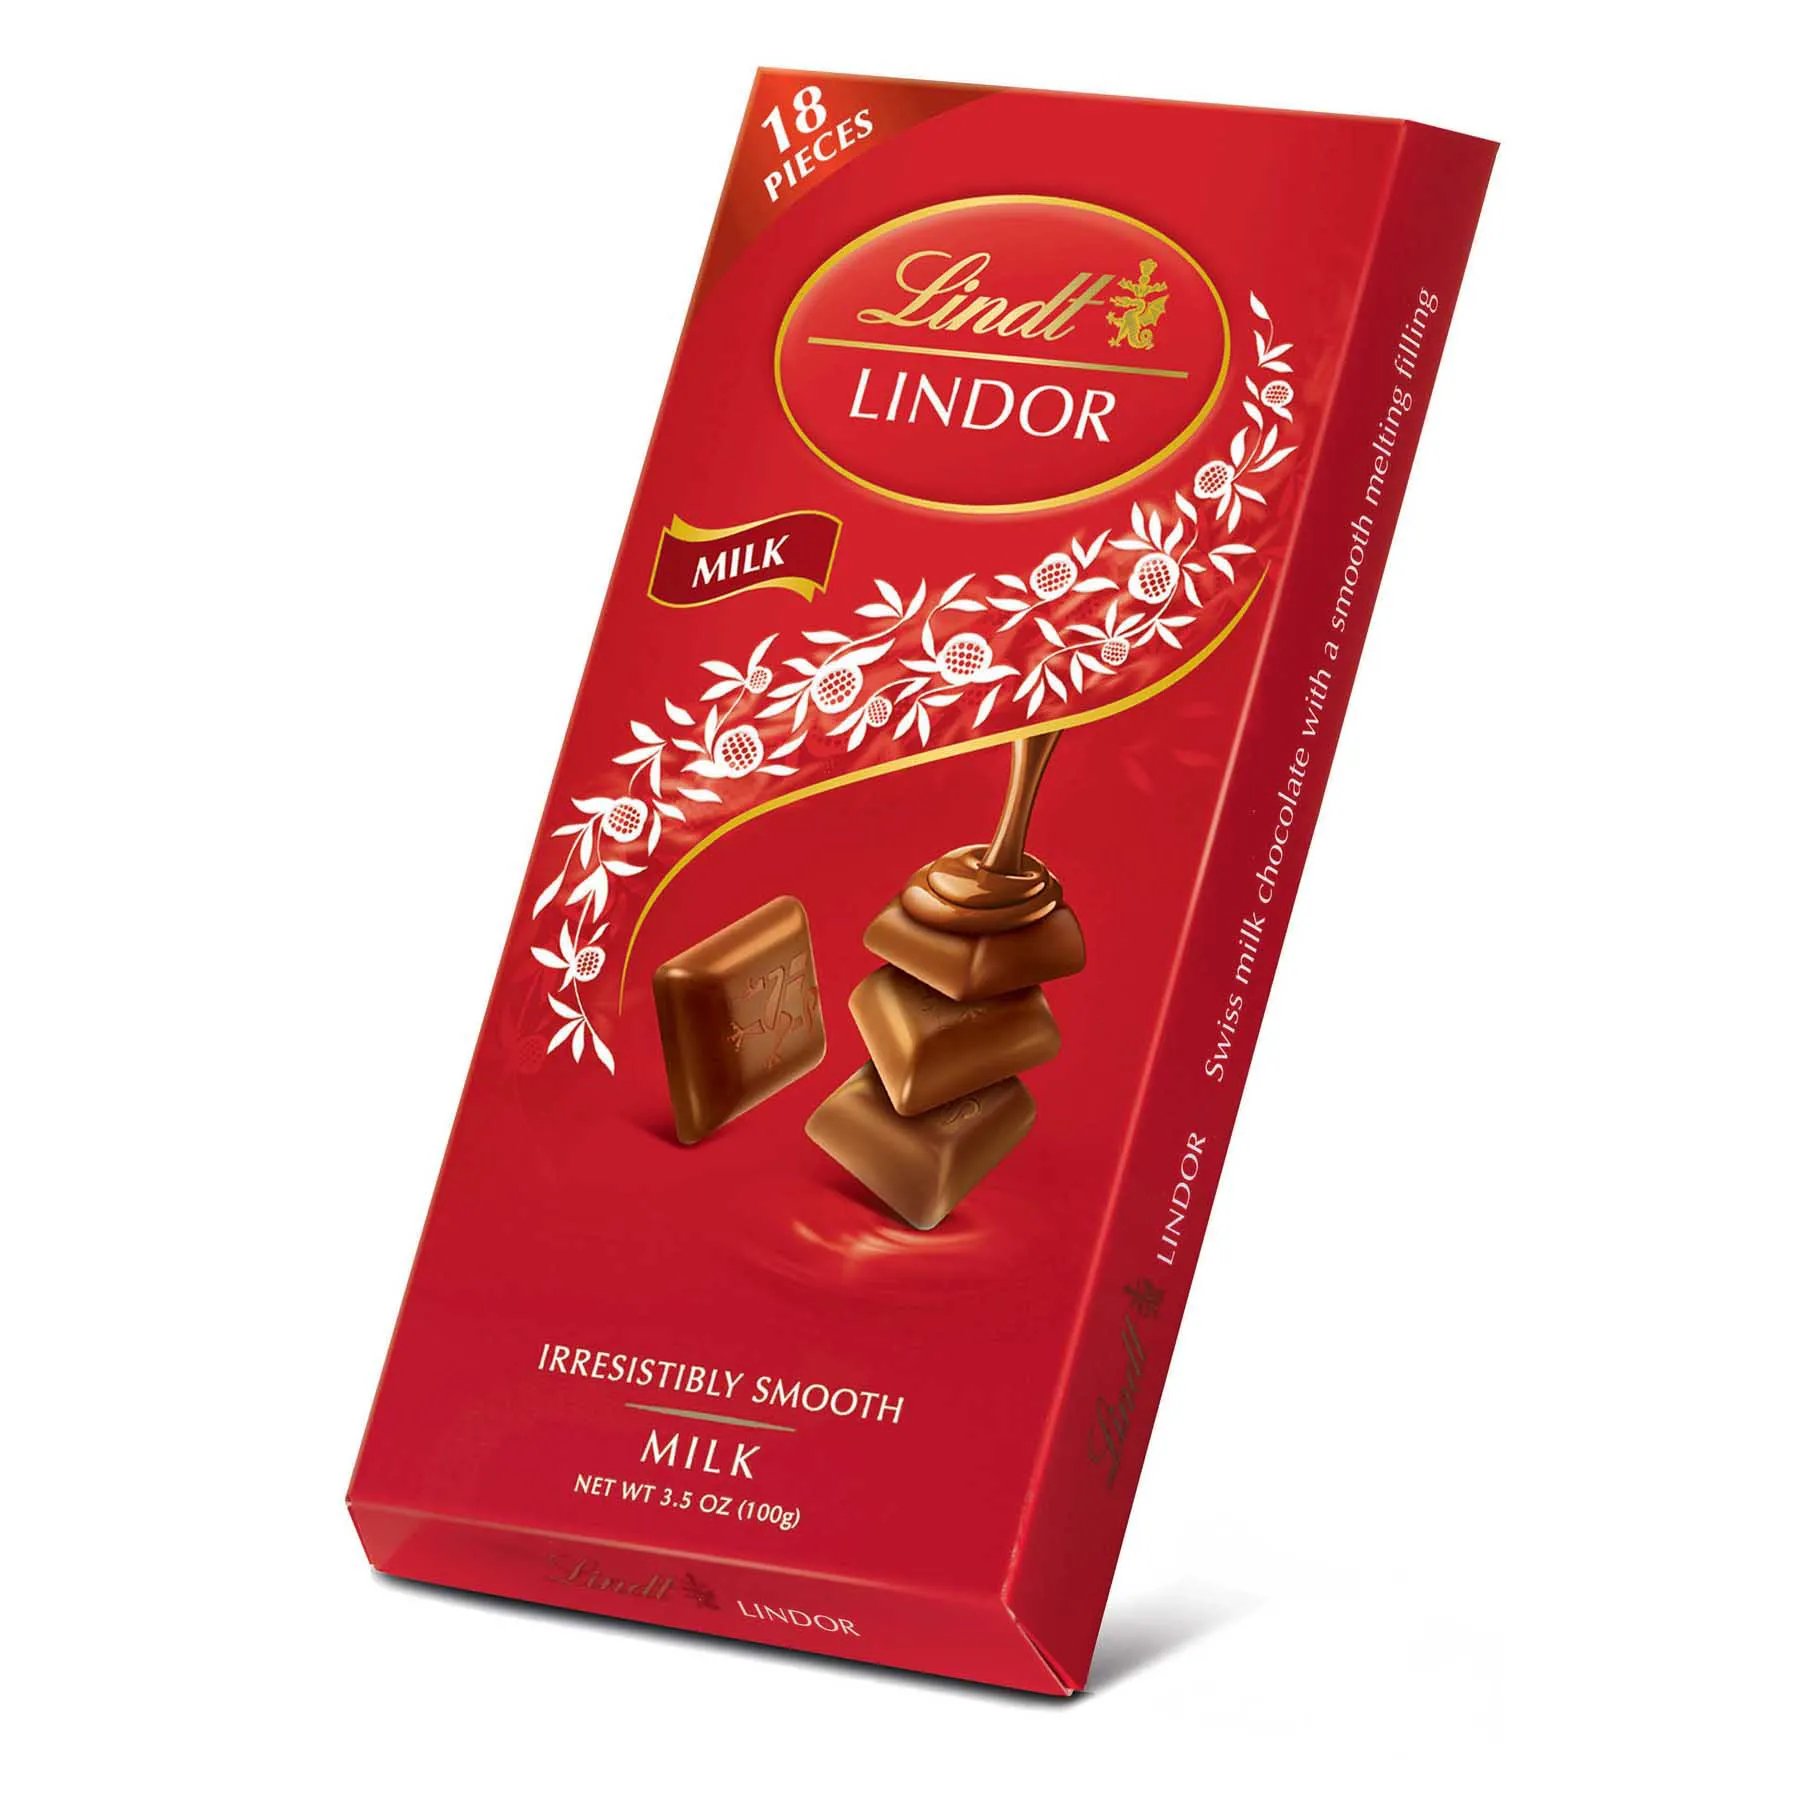 CHOCOLATE LINDT LINDOR SINGLE AO LEITE 100GR